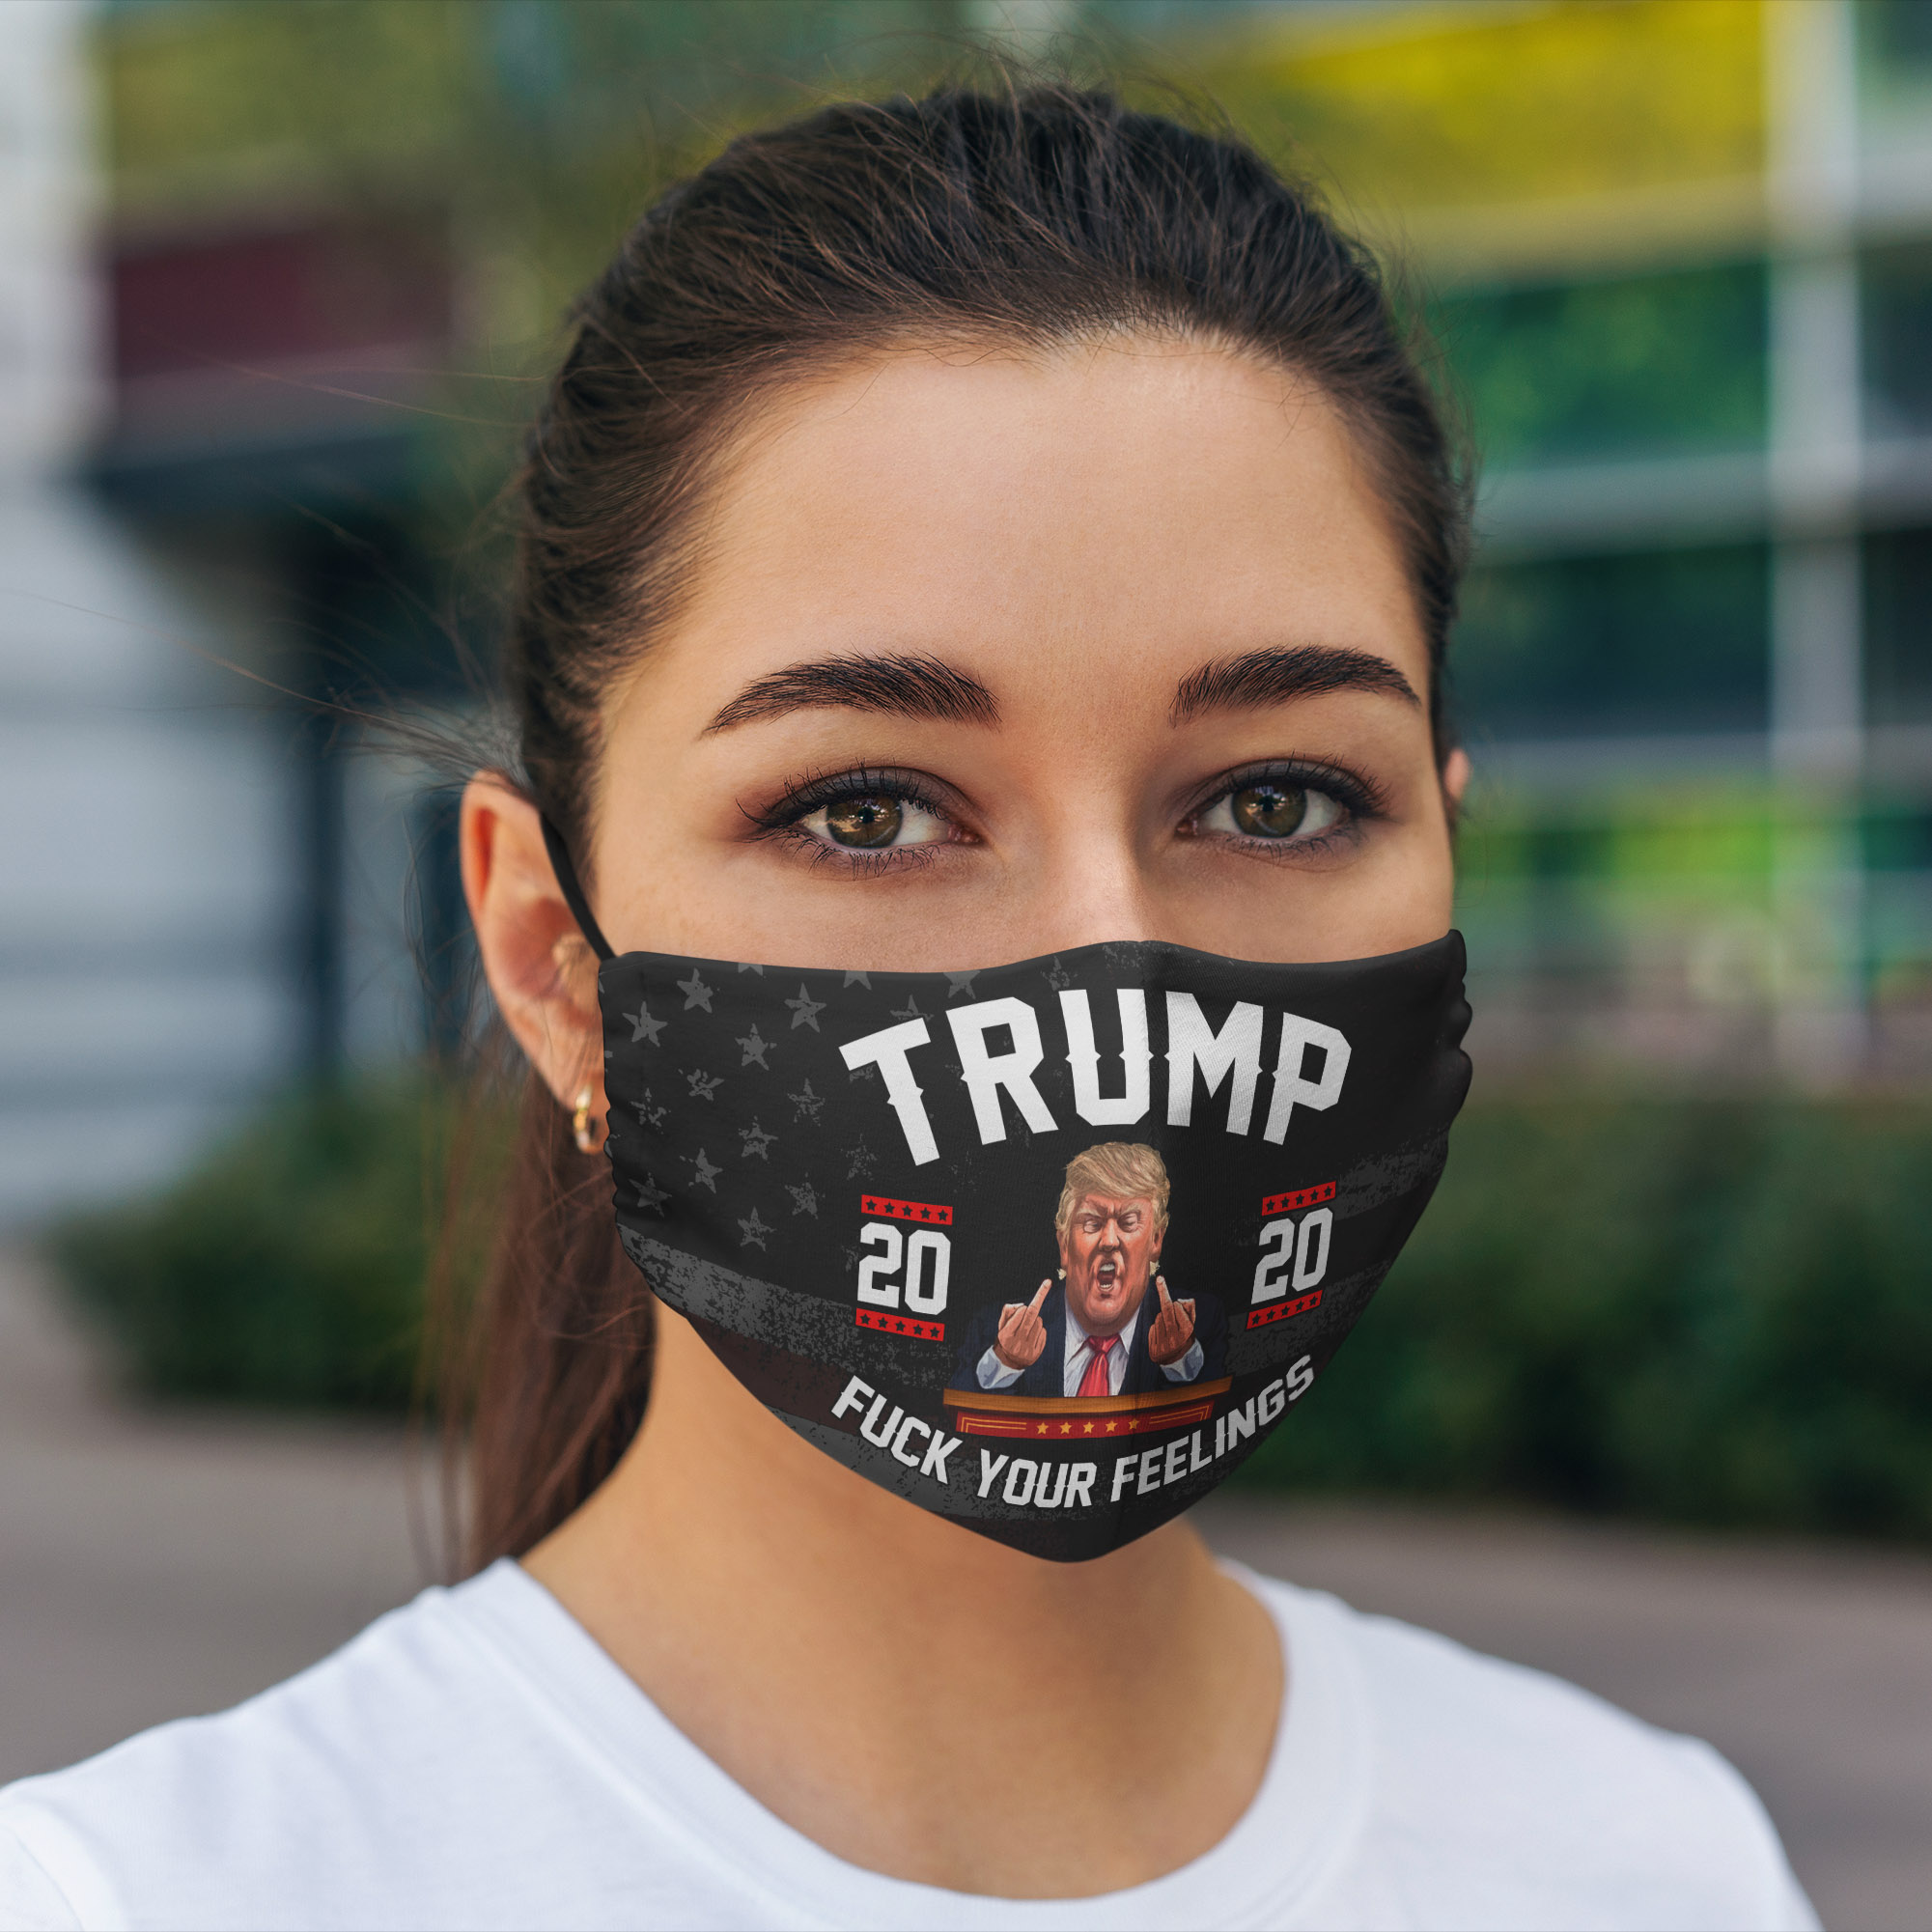 Trump 2020 fuck you feelings anti pollution face mask - maria